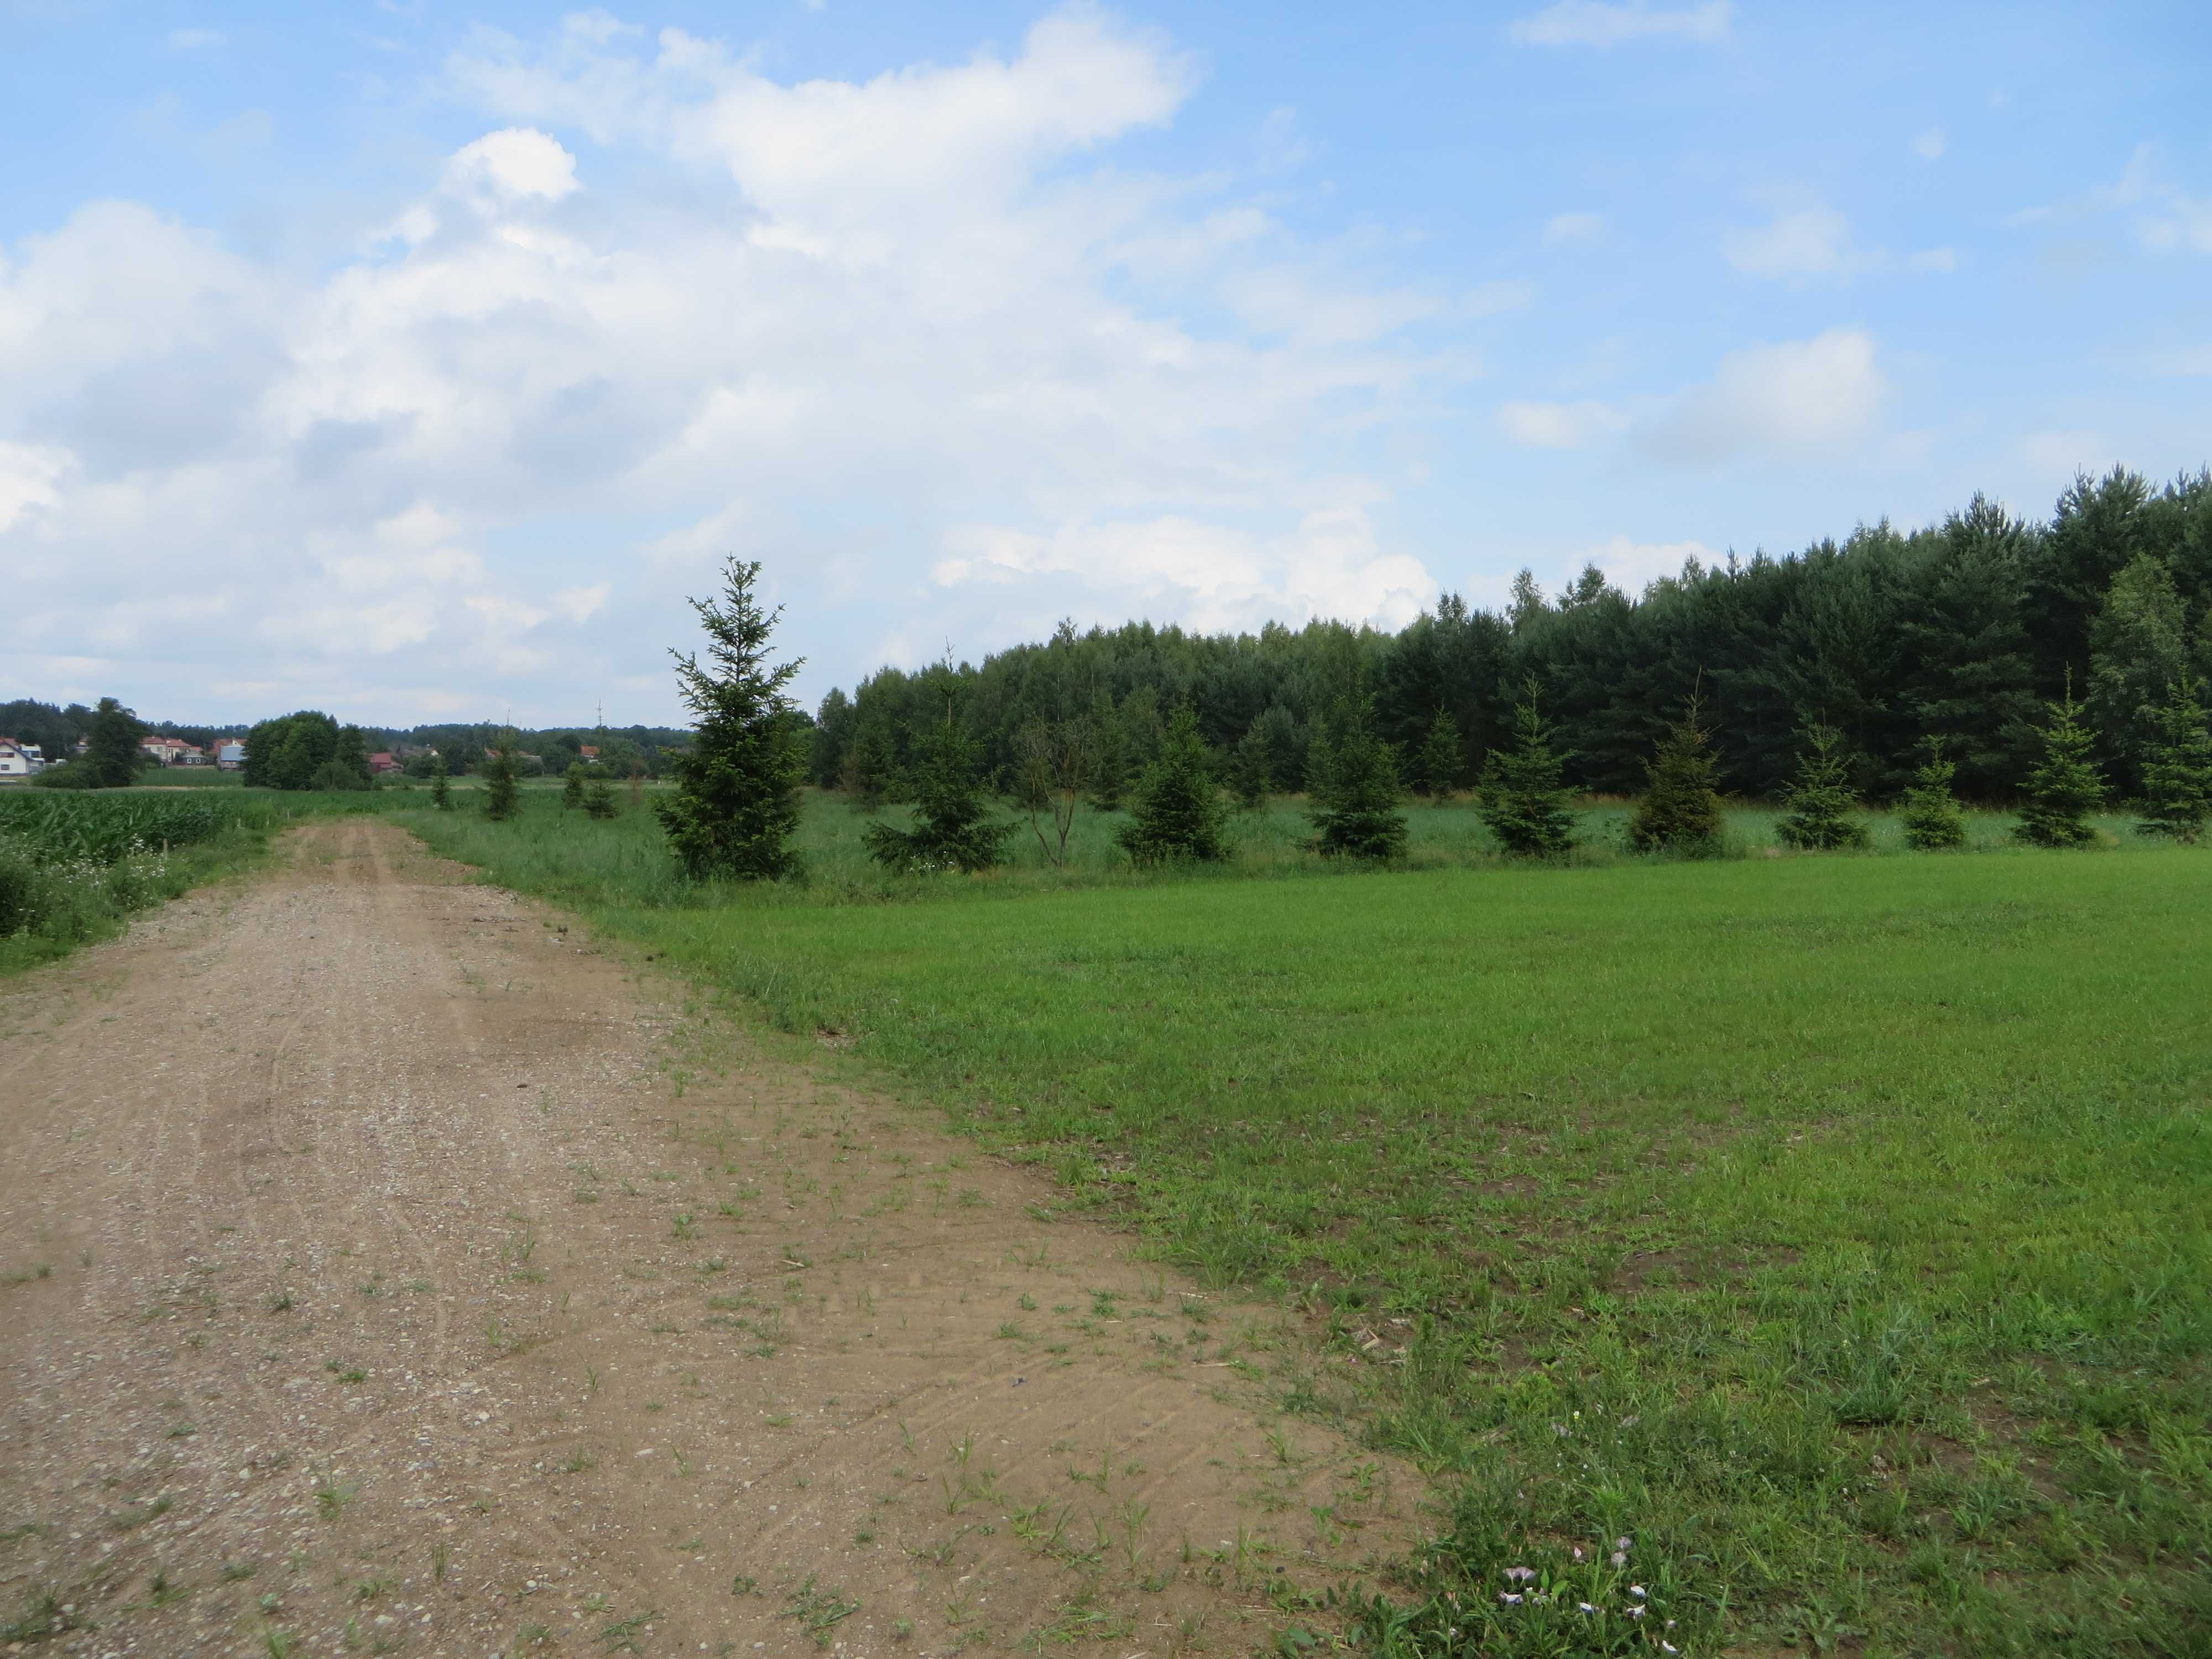 Działka rolna 0,3001 ha Zalesiany gm. Turośń Kościelna